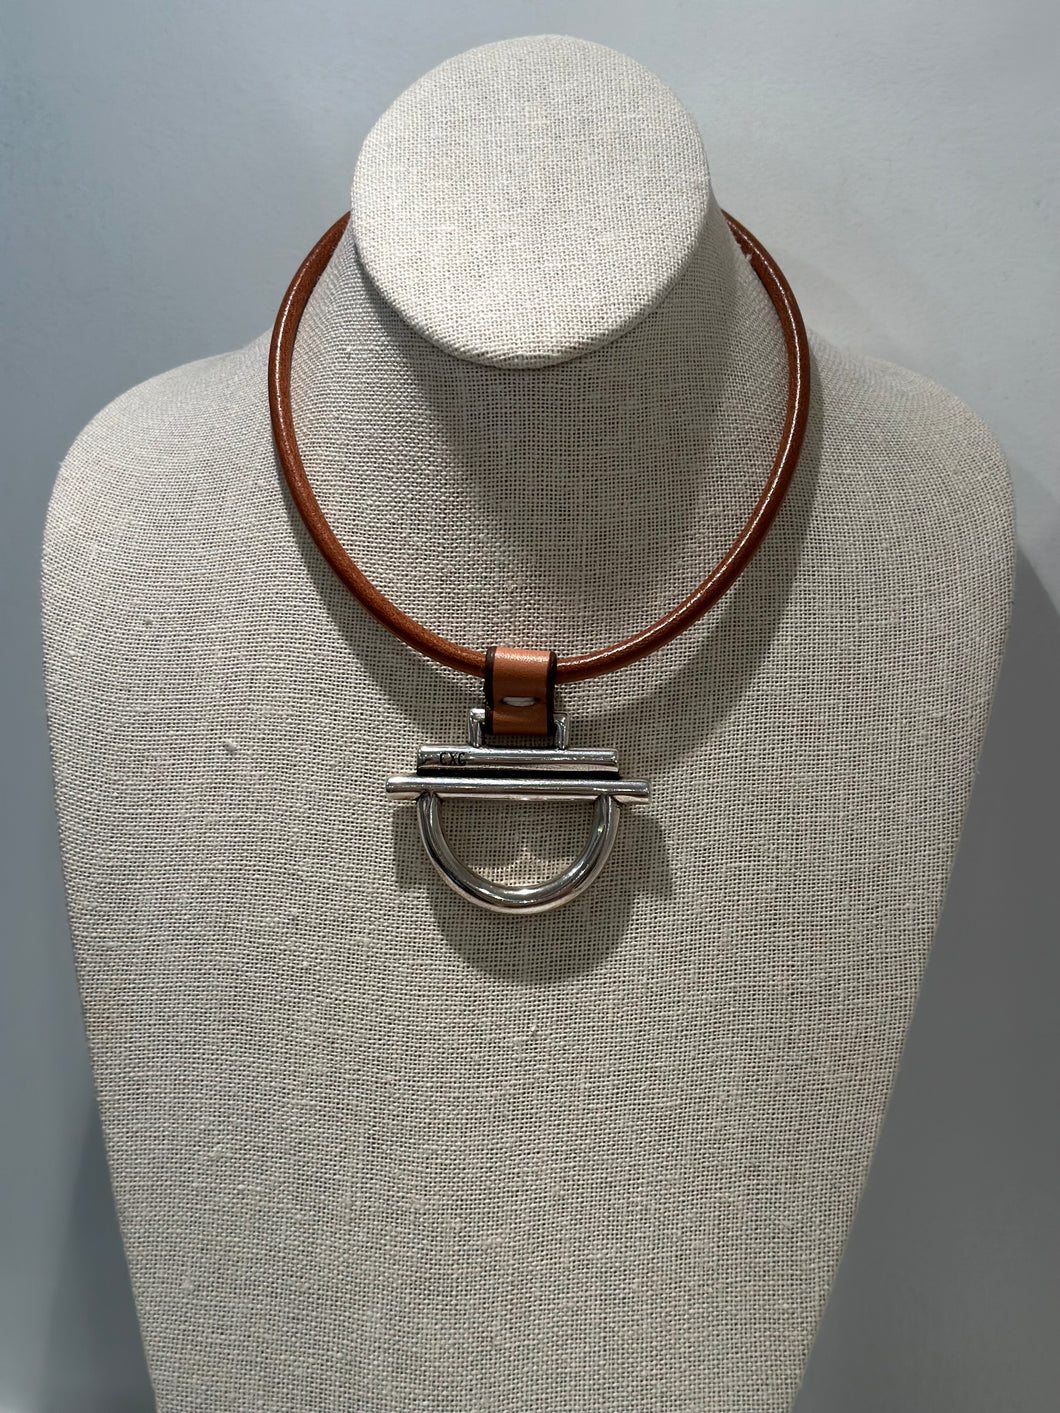 CXC Dean Davidson Silver & Leather Necklace